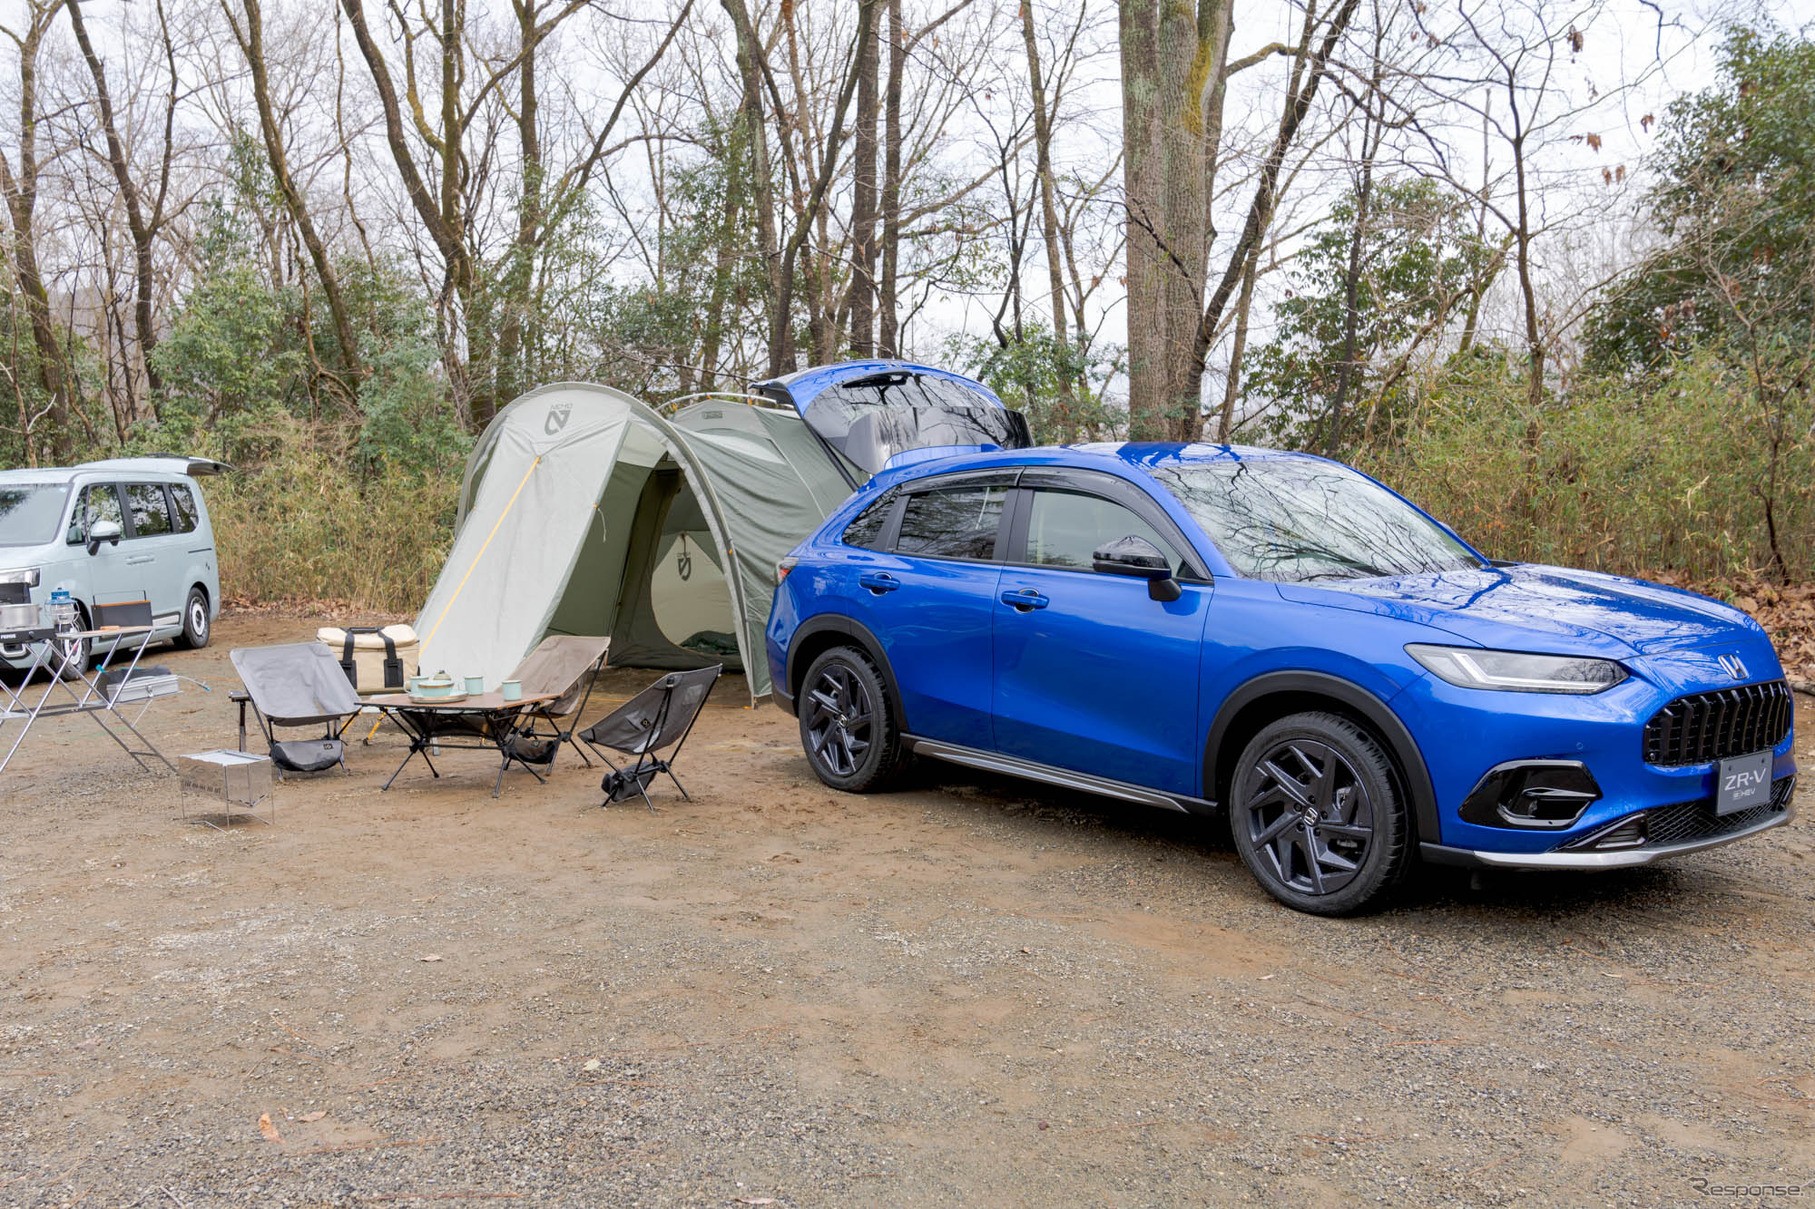 SUVでもキャンプ用品はしっかり積み込めるということを、多くの方に知ってもらいたい。